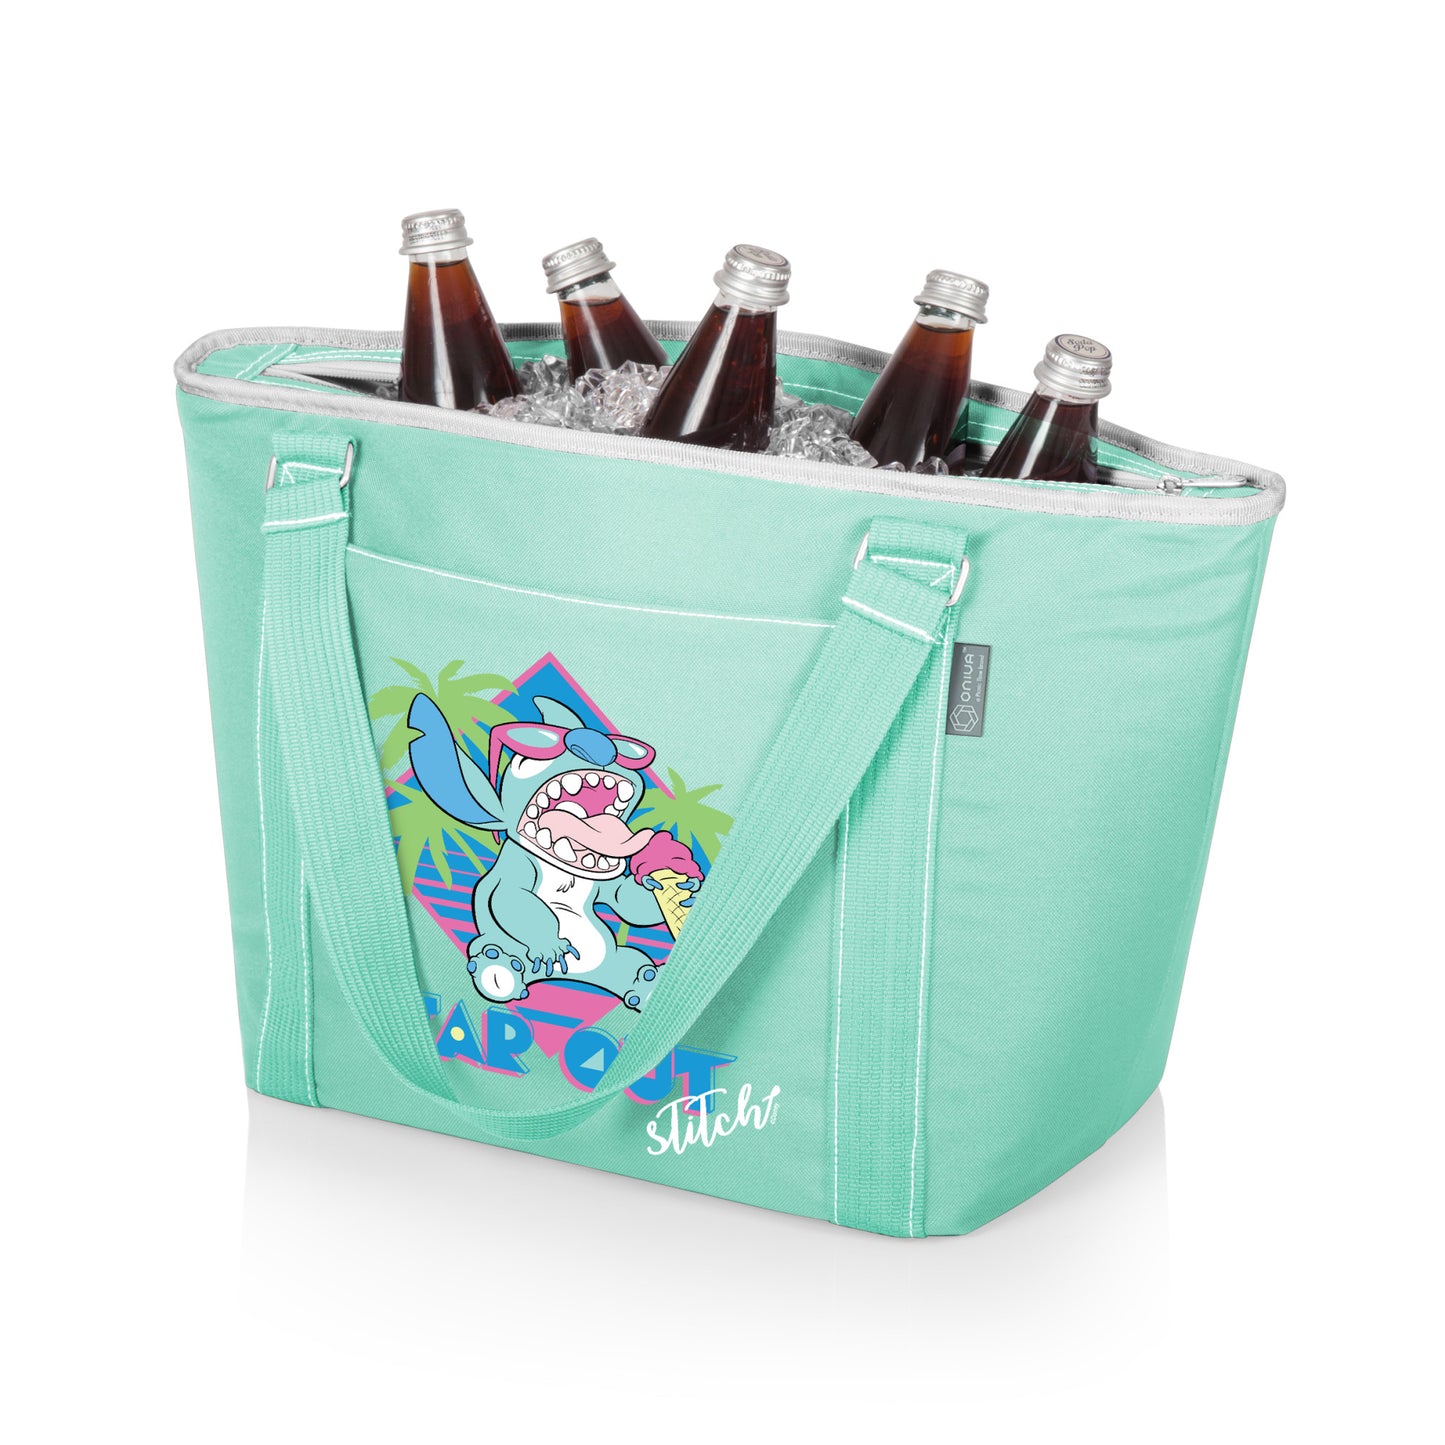 Stitch (Lilo & Stitch) Disney Insulated Cooler Tote Bag